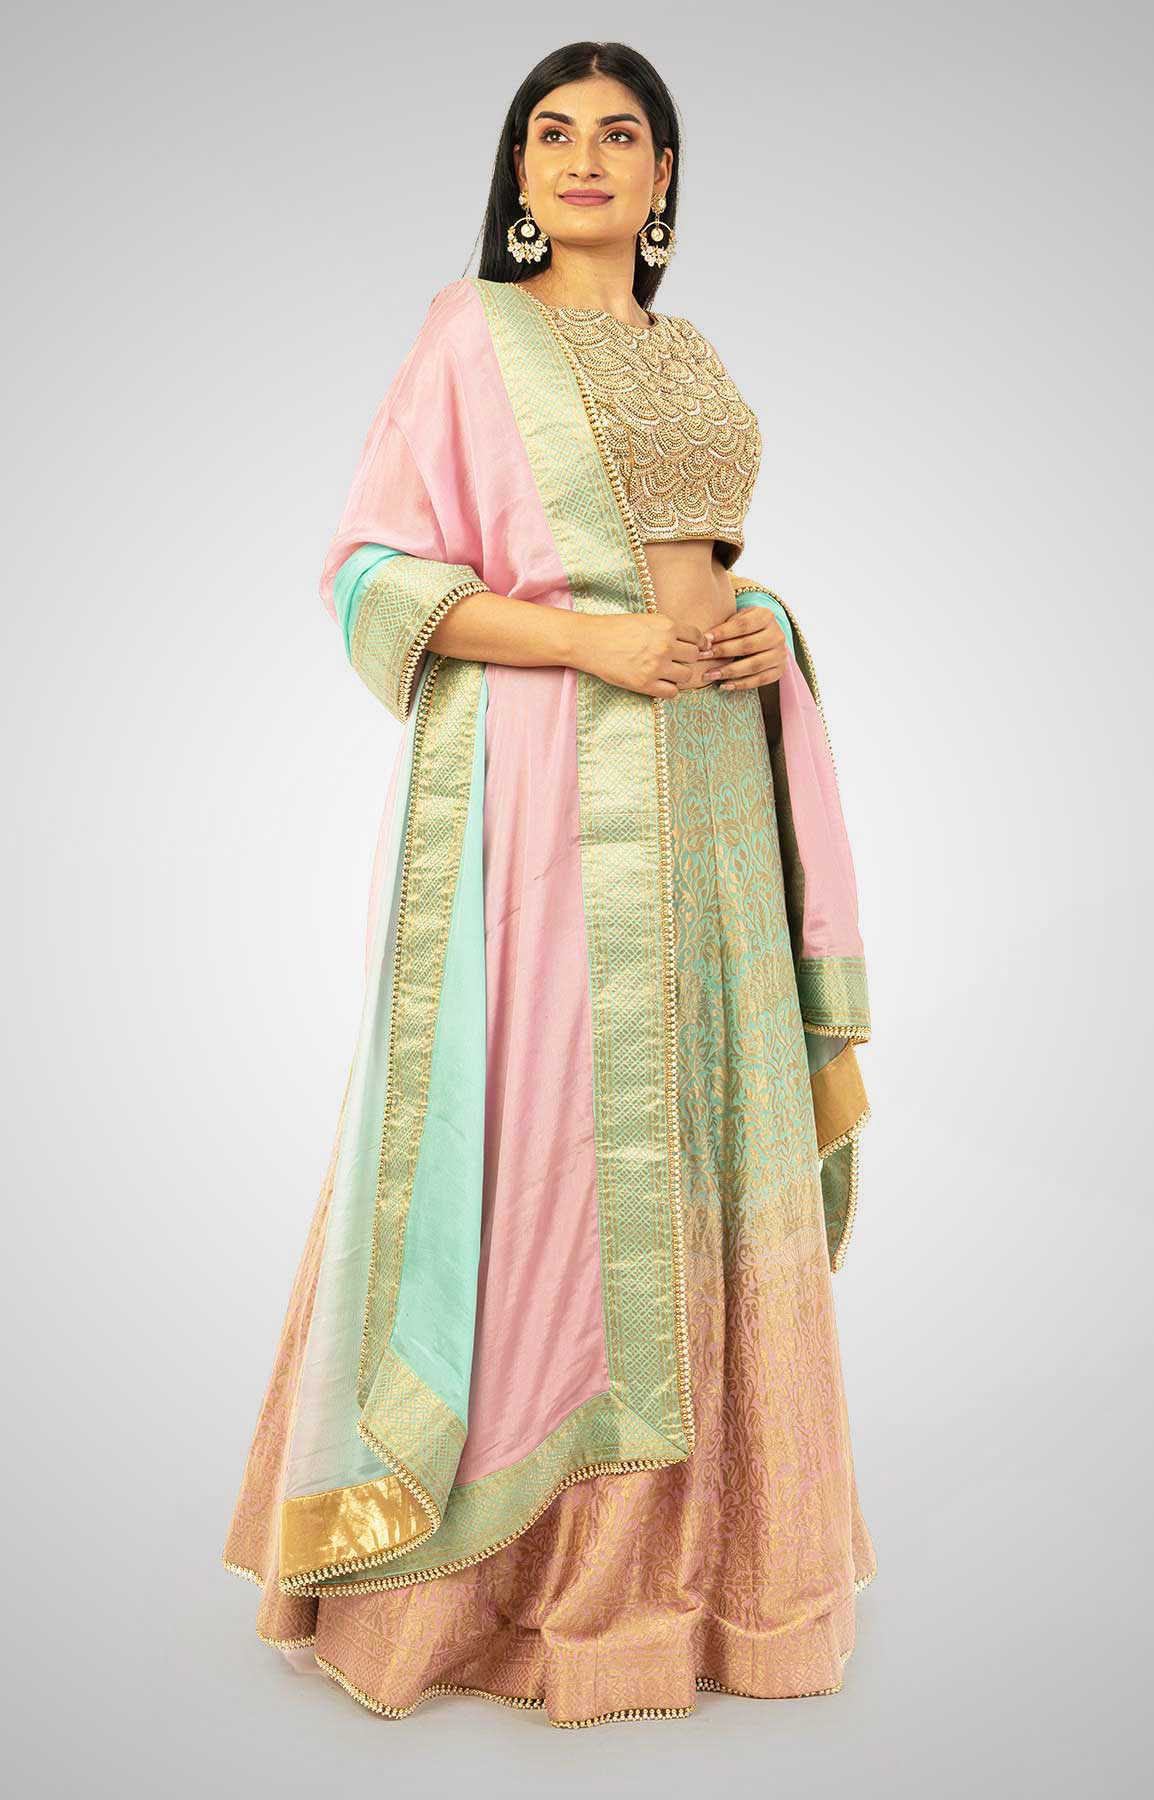 Powder Pink And Aqua Green Banarasi Lehenga Choli With Hand Embroidered Blouse – Viraaya By Ushnakmals